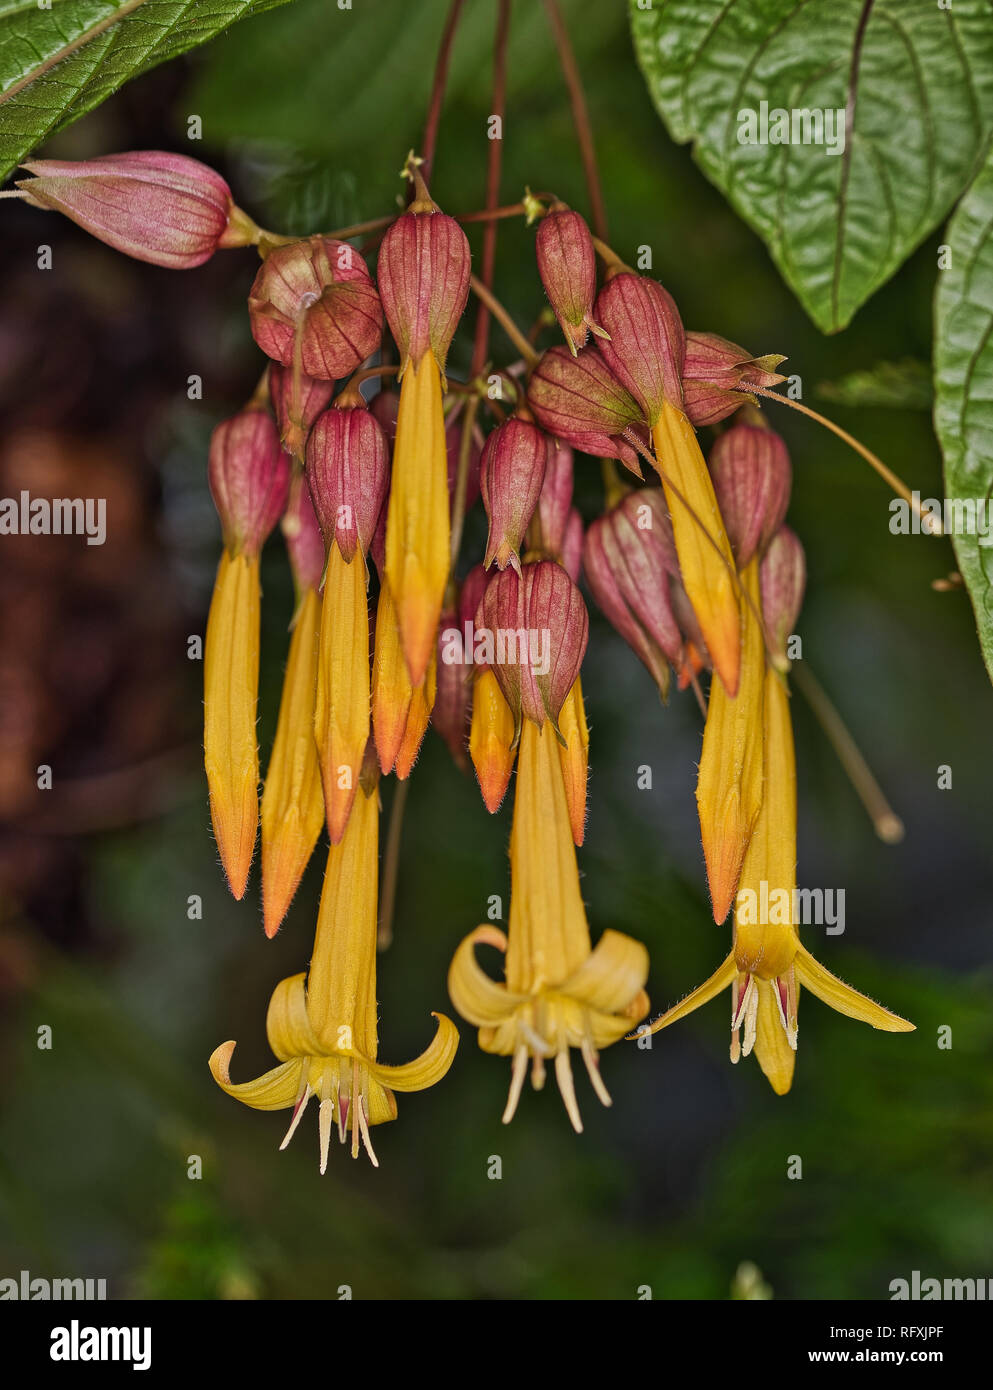 Pflanzen Blumen Botanischer Garten Basel, Schweiz Stockfotografie - Alamy